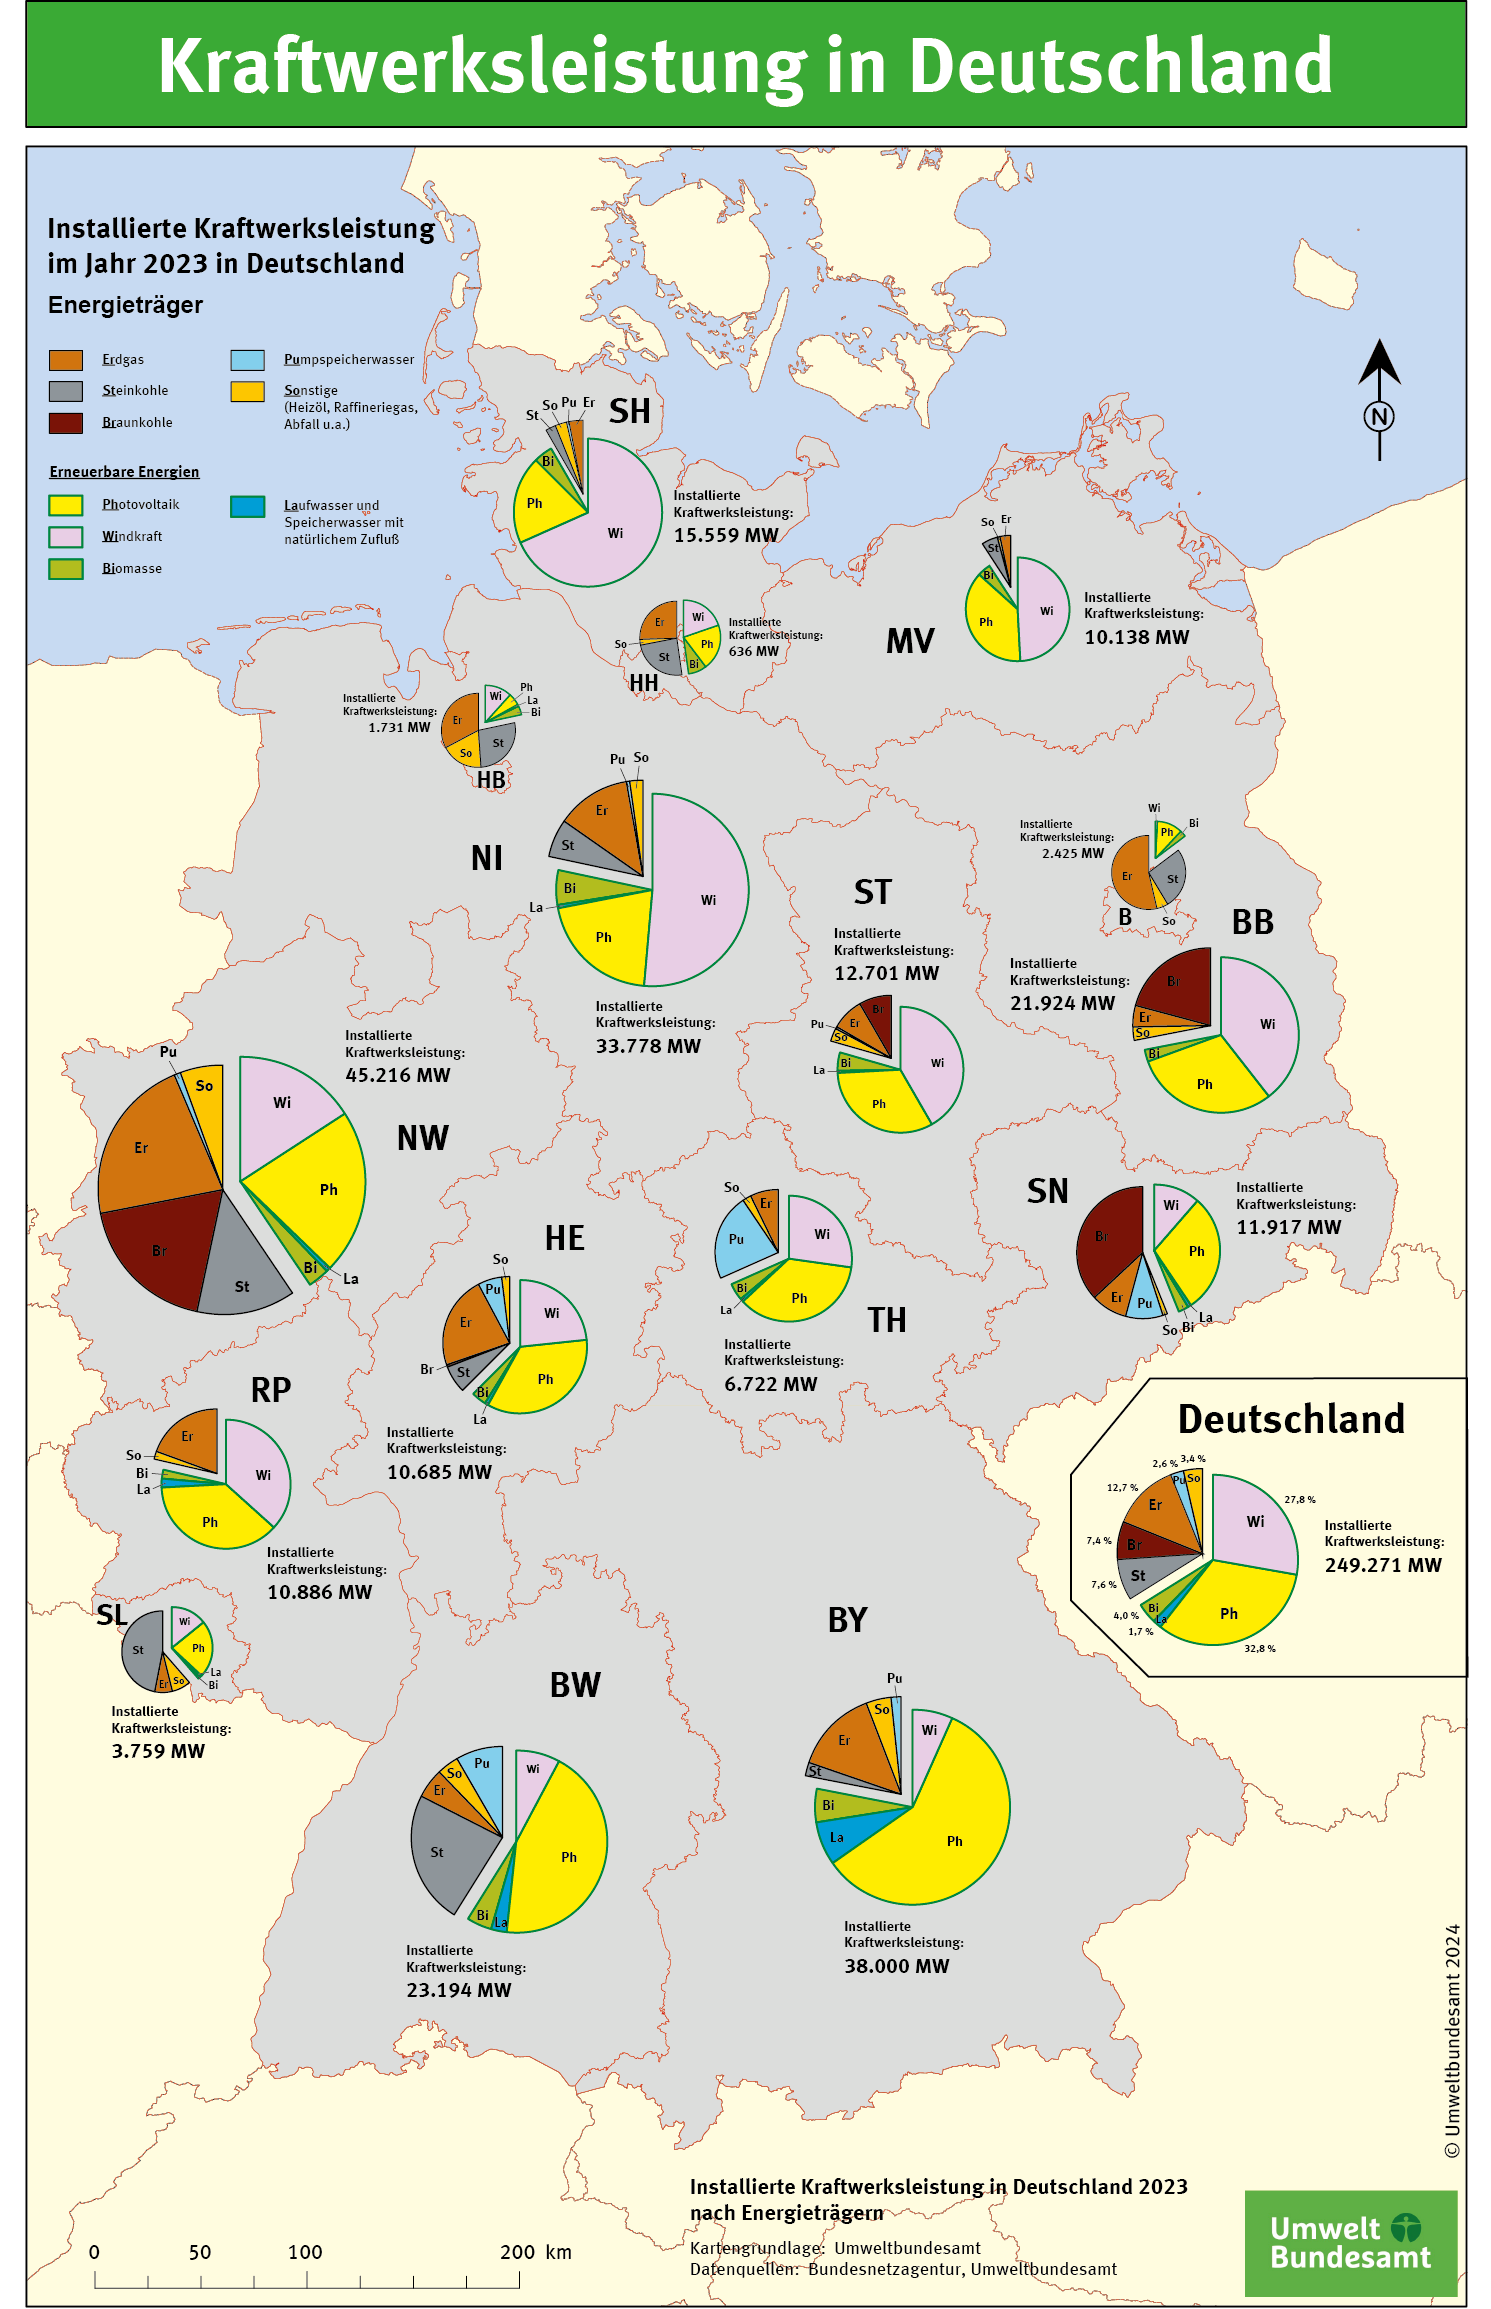 Die Karte zeigt die installierte Kraftwerksleistung der einzelnen deutschen Bundesländer und von Deutschland insgesamt.